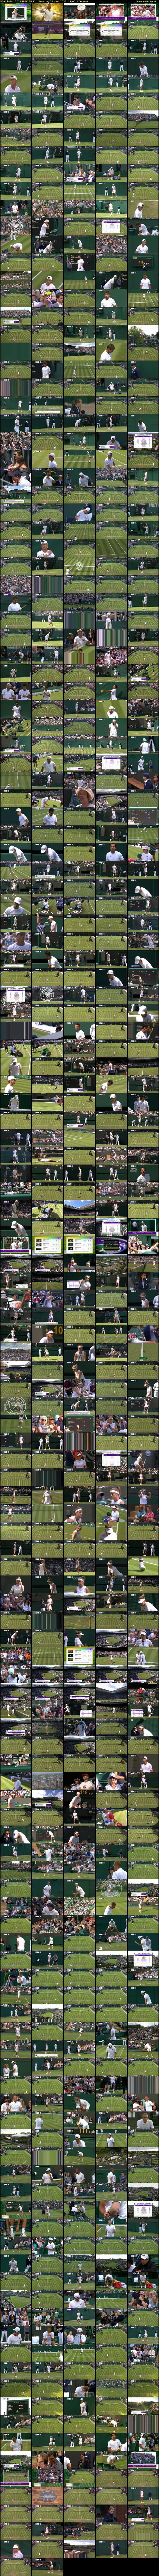 Wimbledon 2022 (BBC RB 1) Tuesday 28 June 2022 11:00 - 21:00